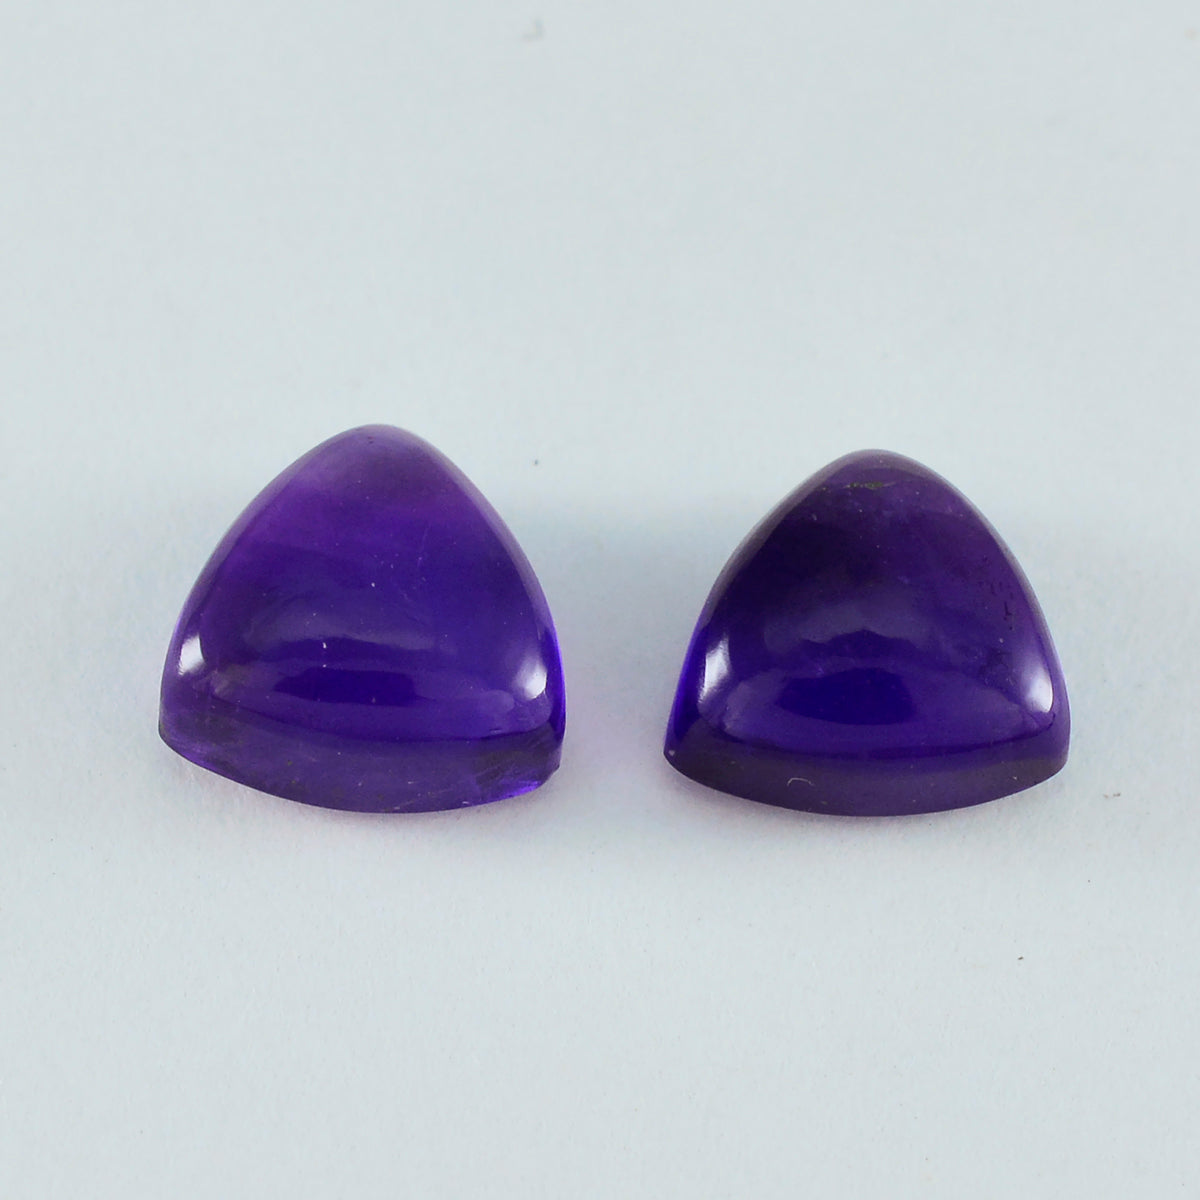 Riyogems, 1 pieza, cabujón de amatista púrpura, 13x13mm, forma de billón, gema suelta de calidad increíble